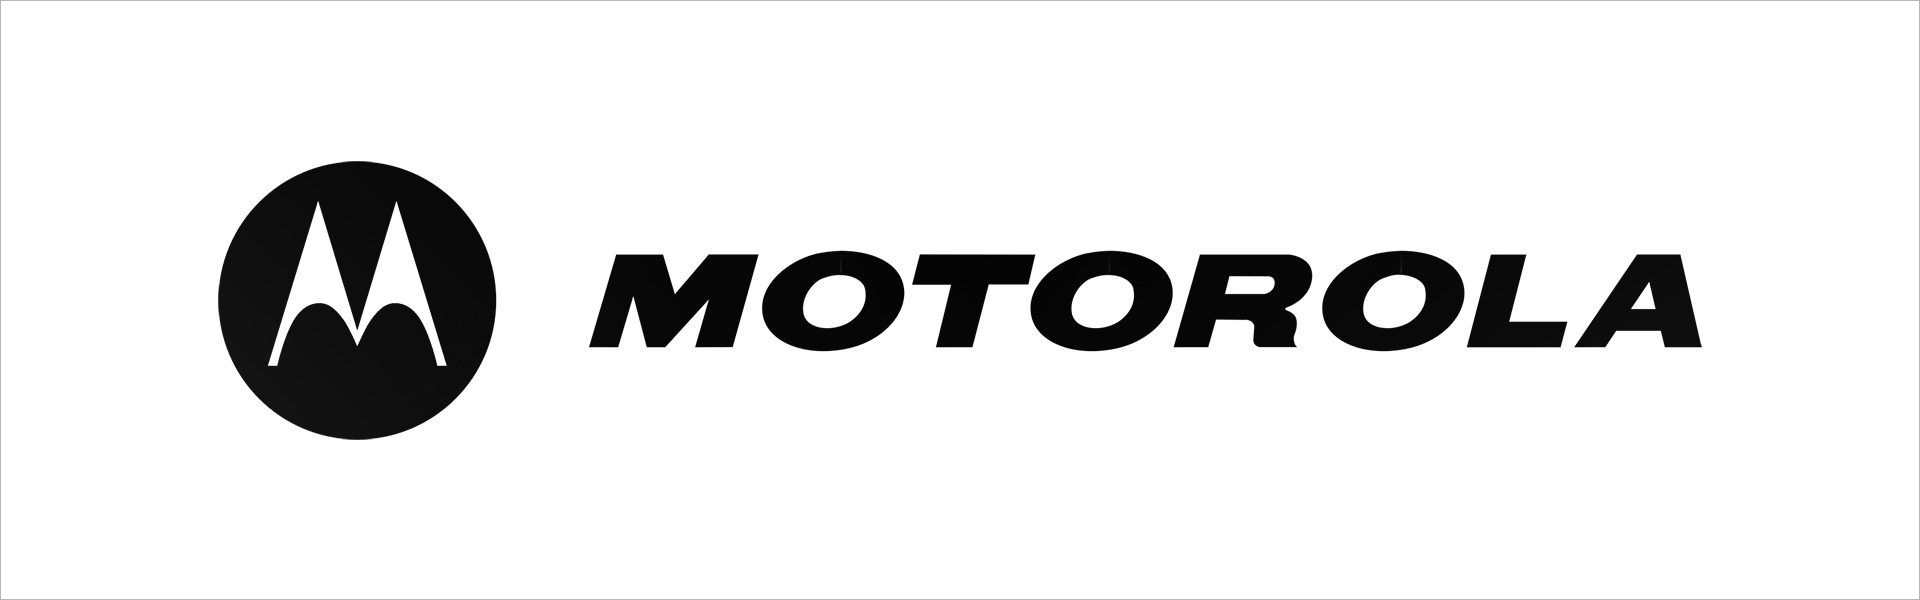 Beebimonitor Motorola MBP855 Motorola